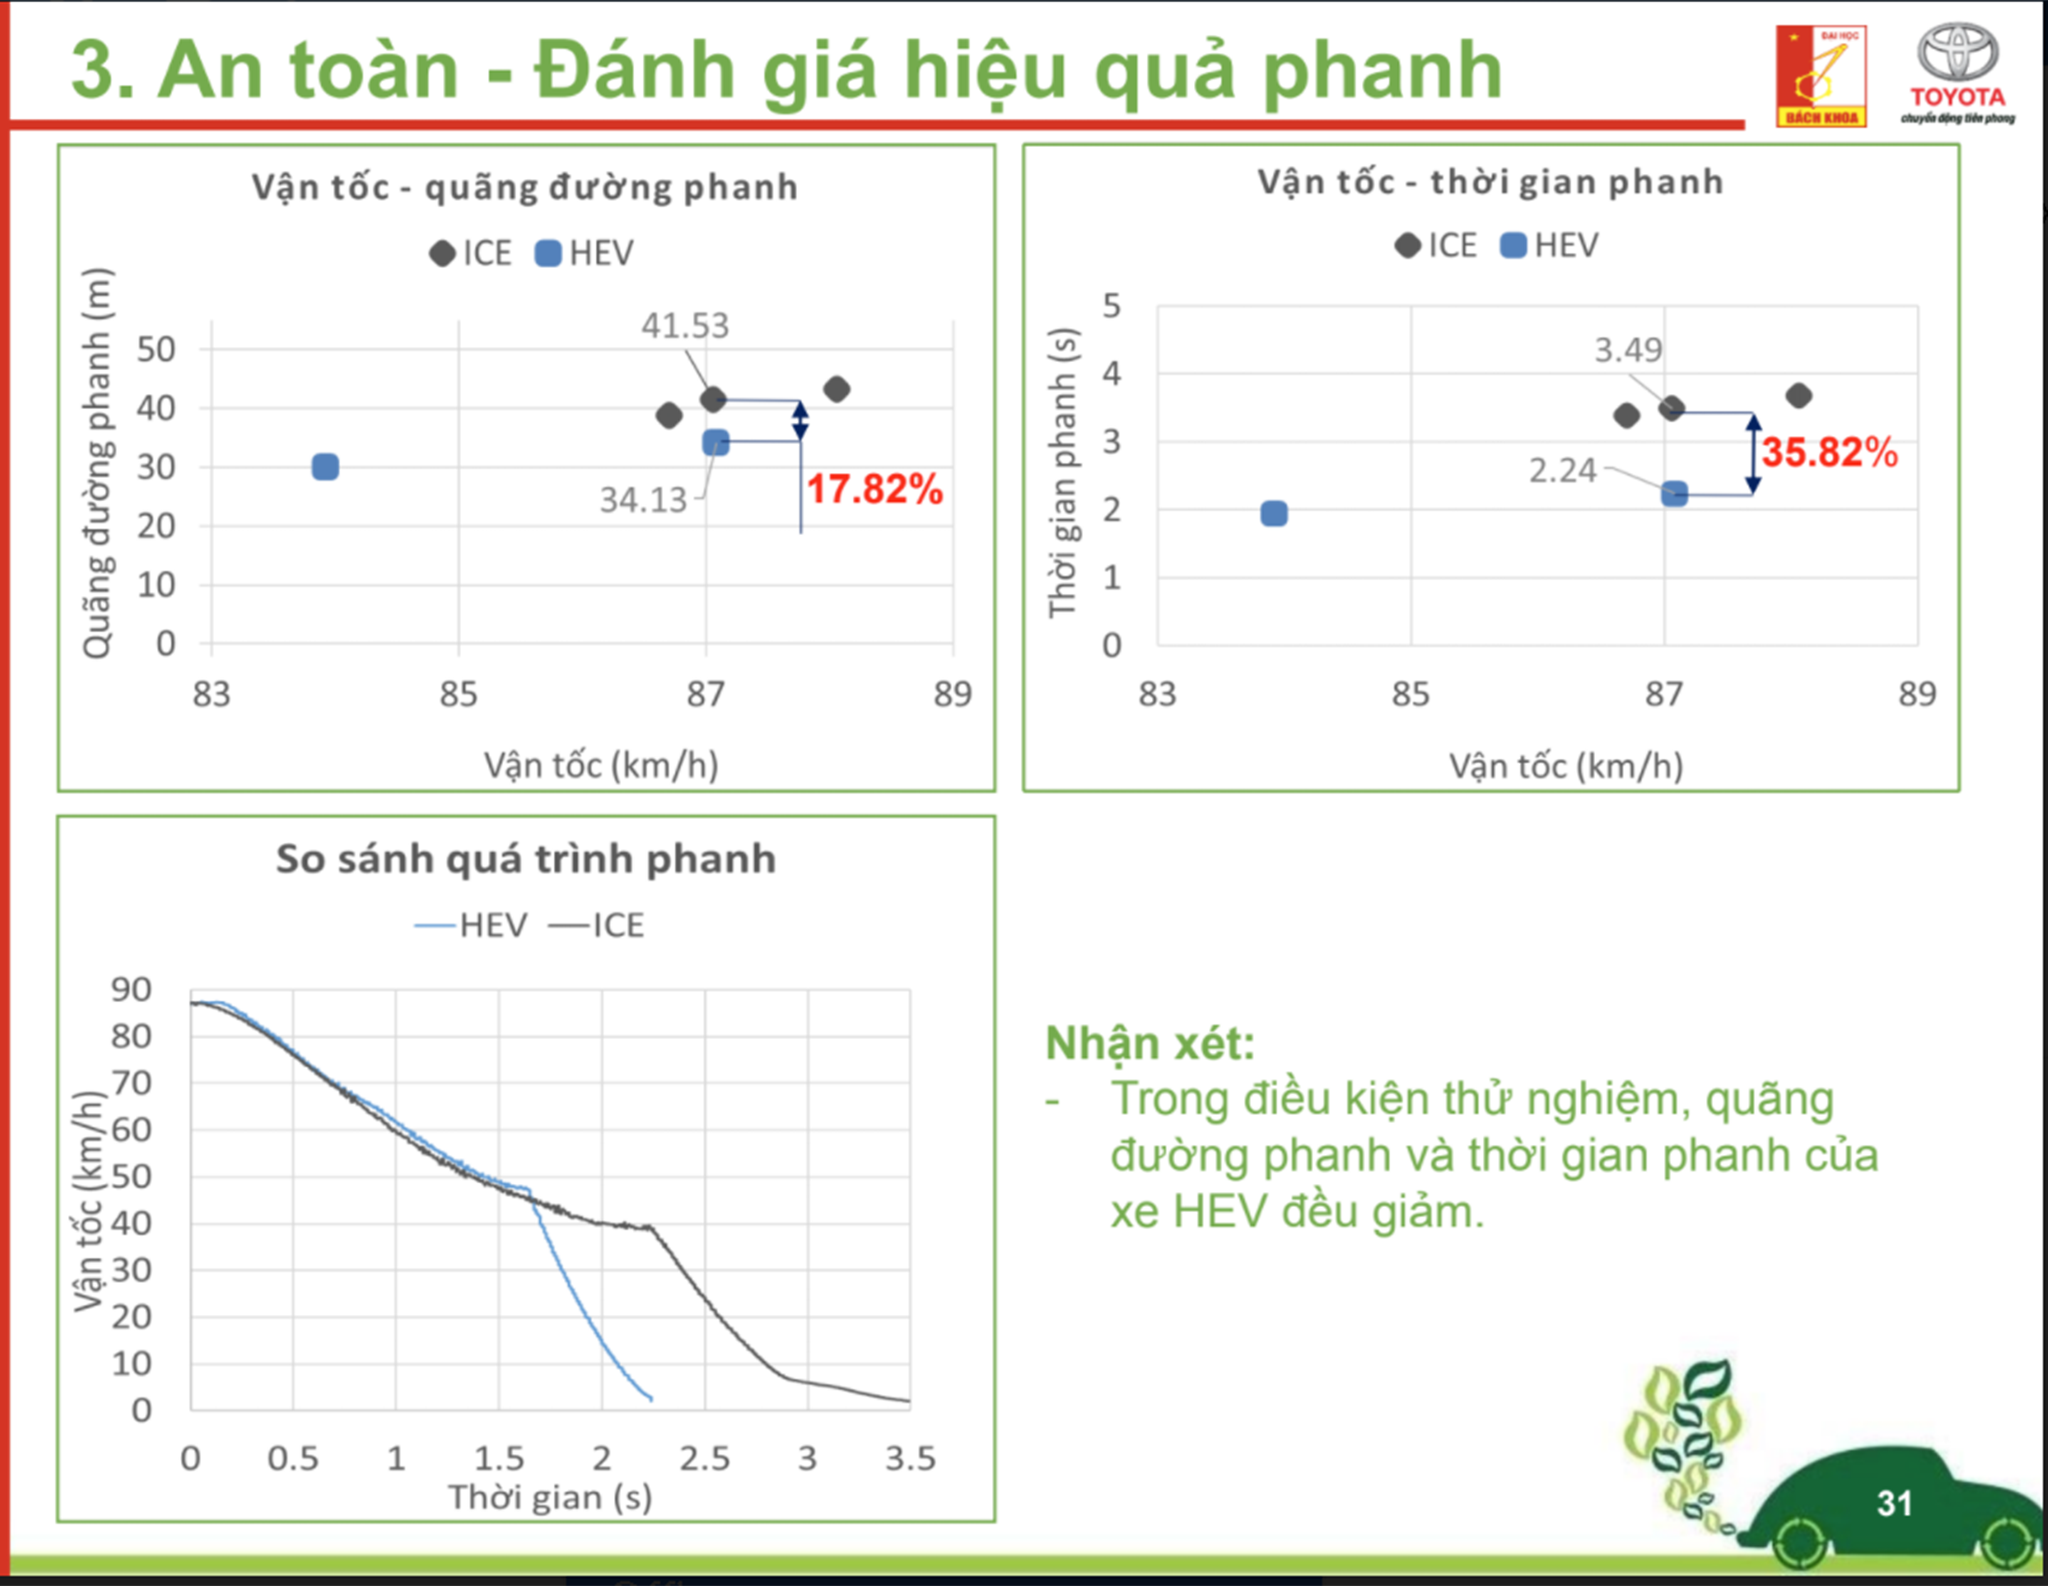 Ưu điểm của xe Hybrid so với xe xăng tại Việt Nam screenshot-59.png